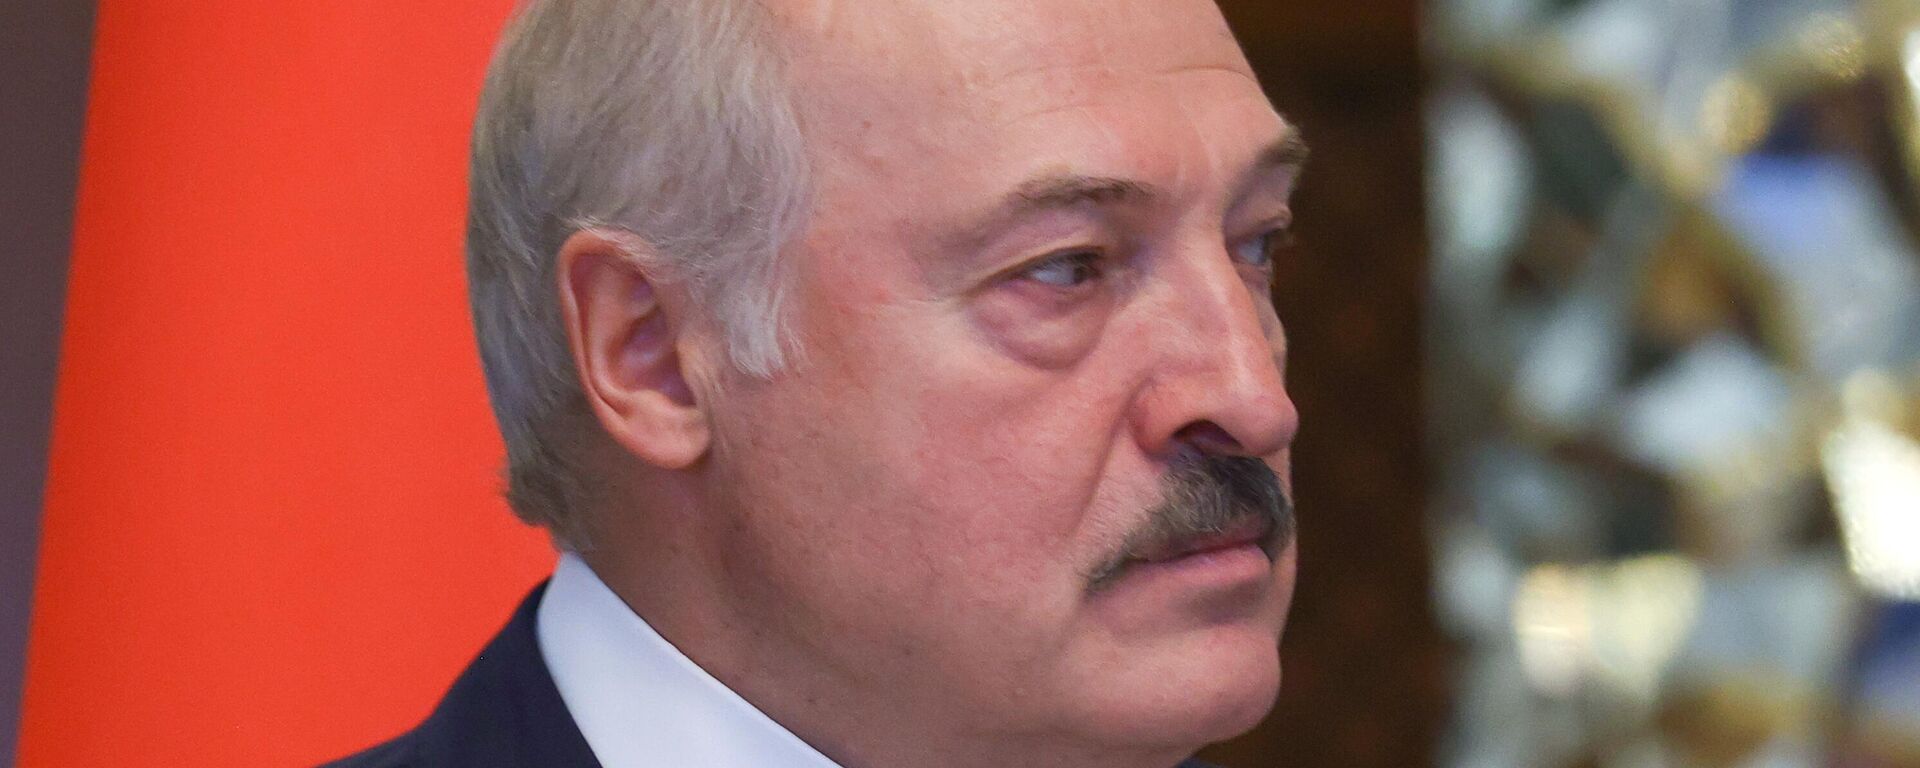 Alexandr Lukashenko, presidente de Bielorrusia - Sputnik Mundo, 1920, 17.01.2022